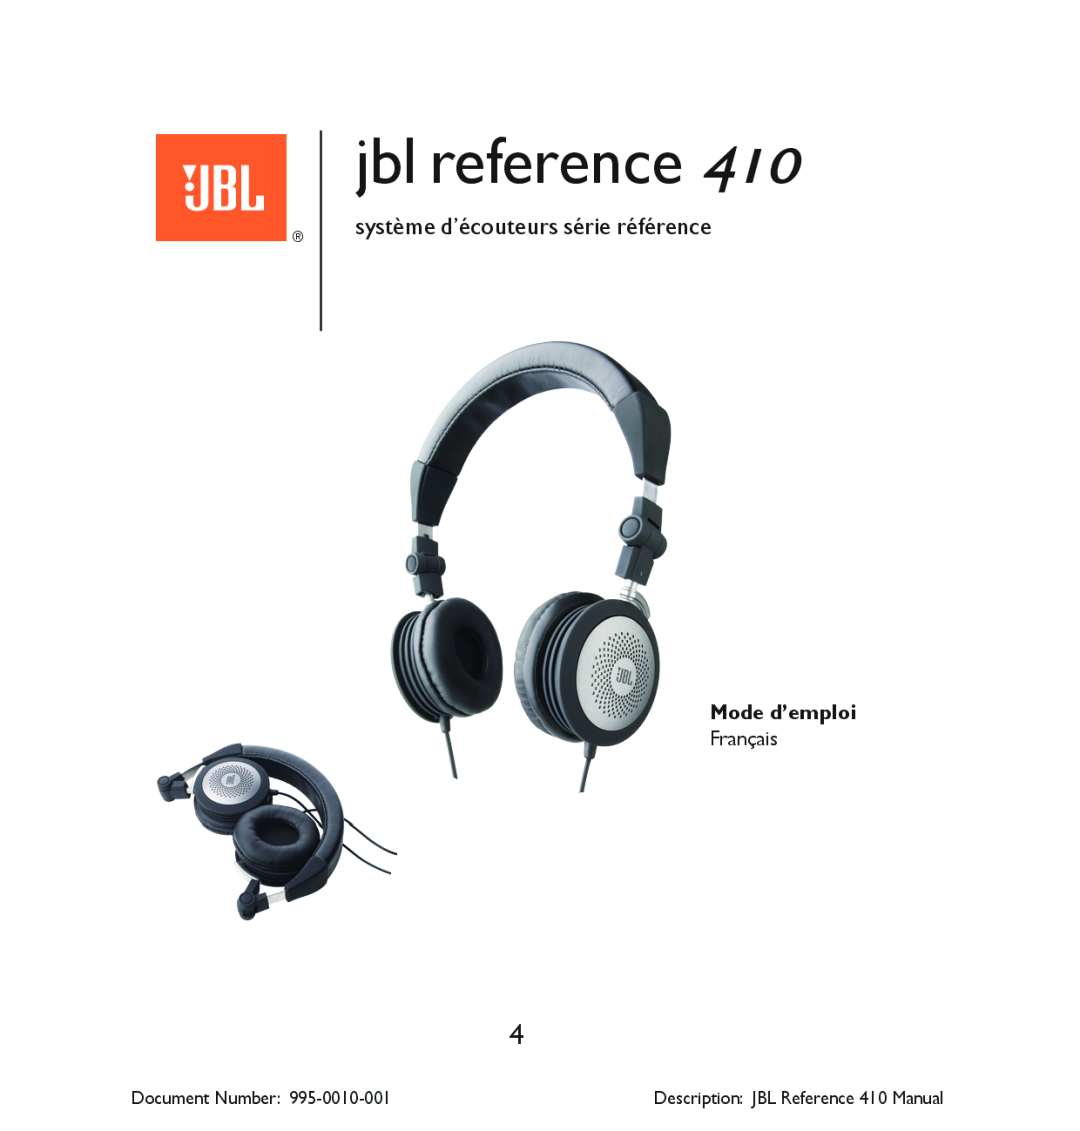 JBL 410 manual système d’écouteurs série référence, Mode d’emploi, jbl reference, Document Number 